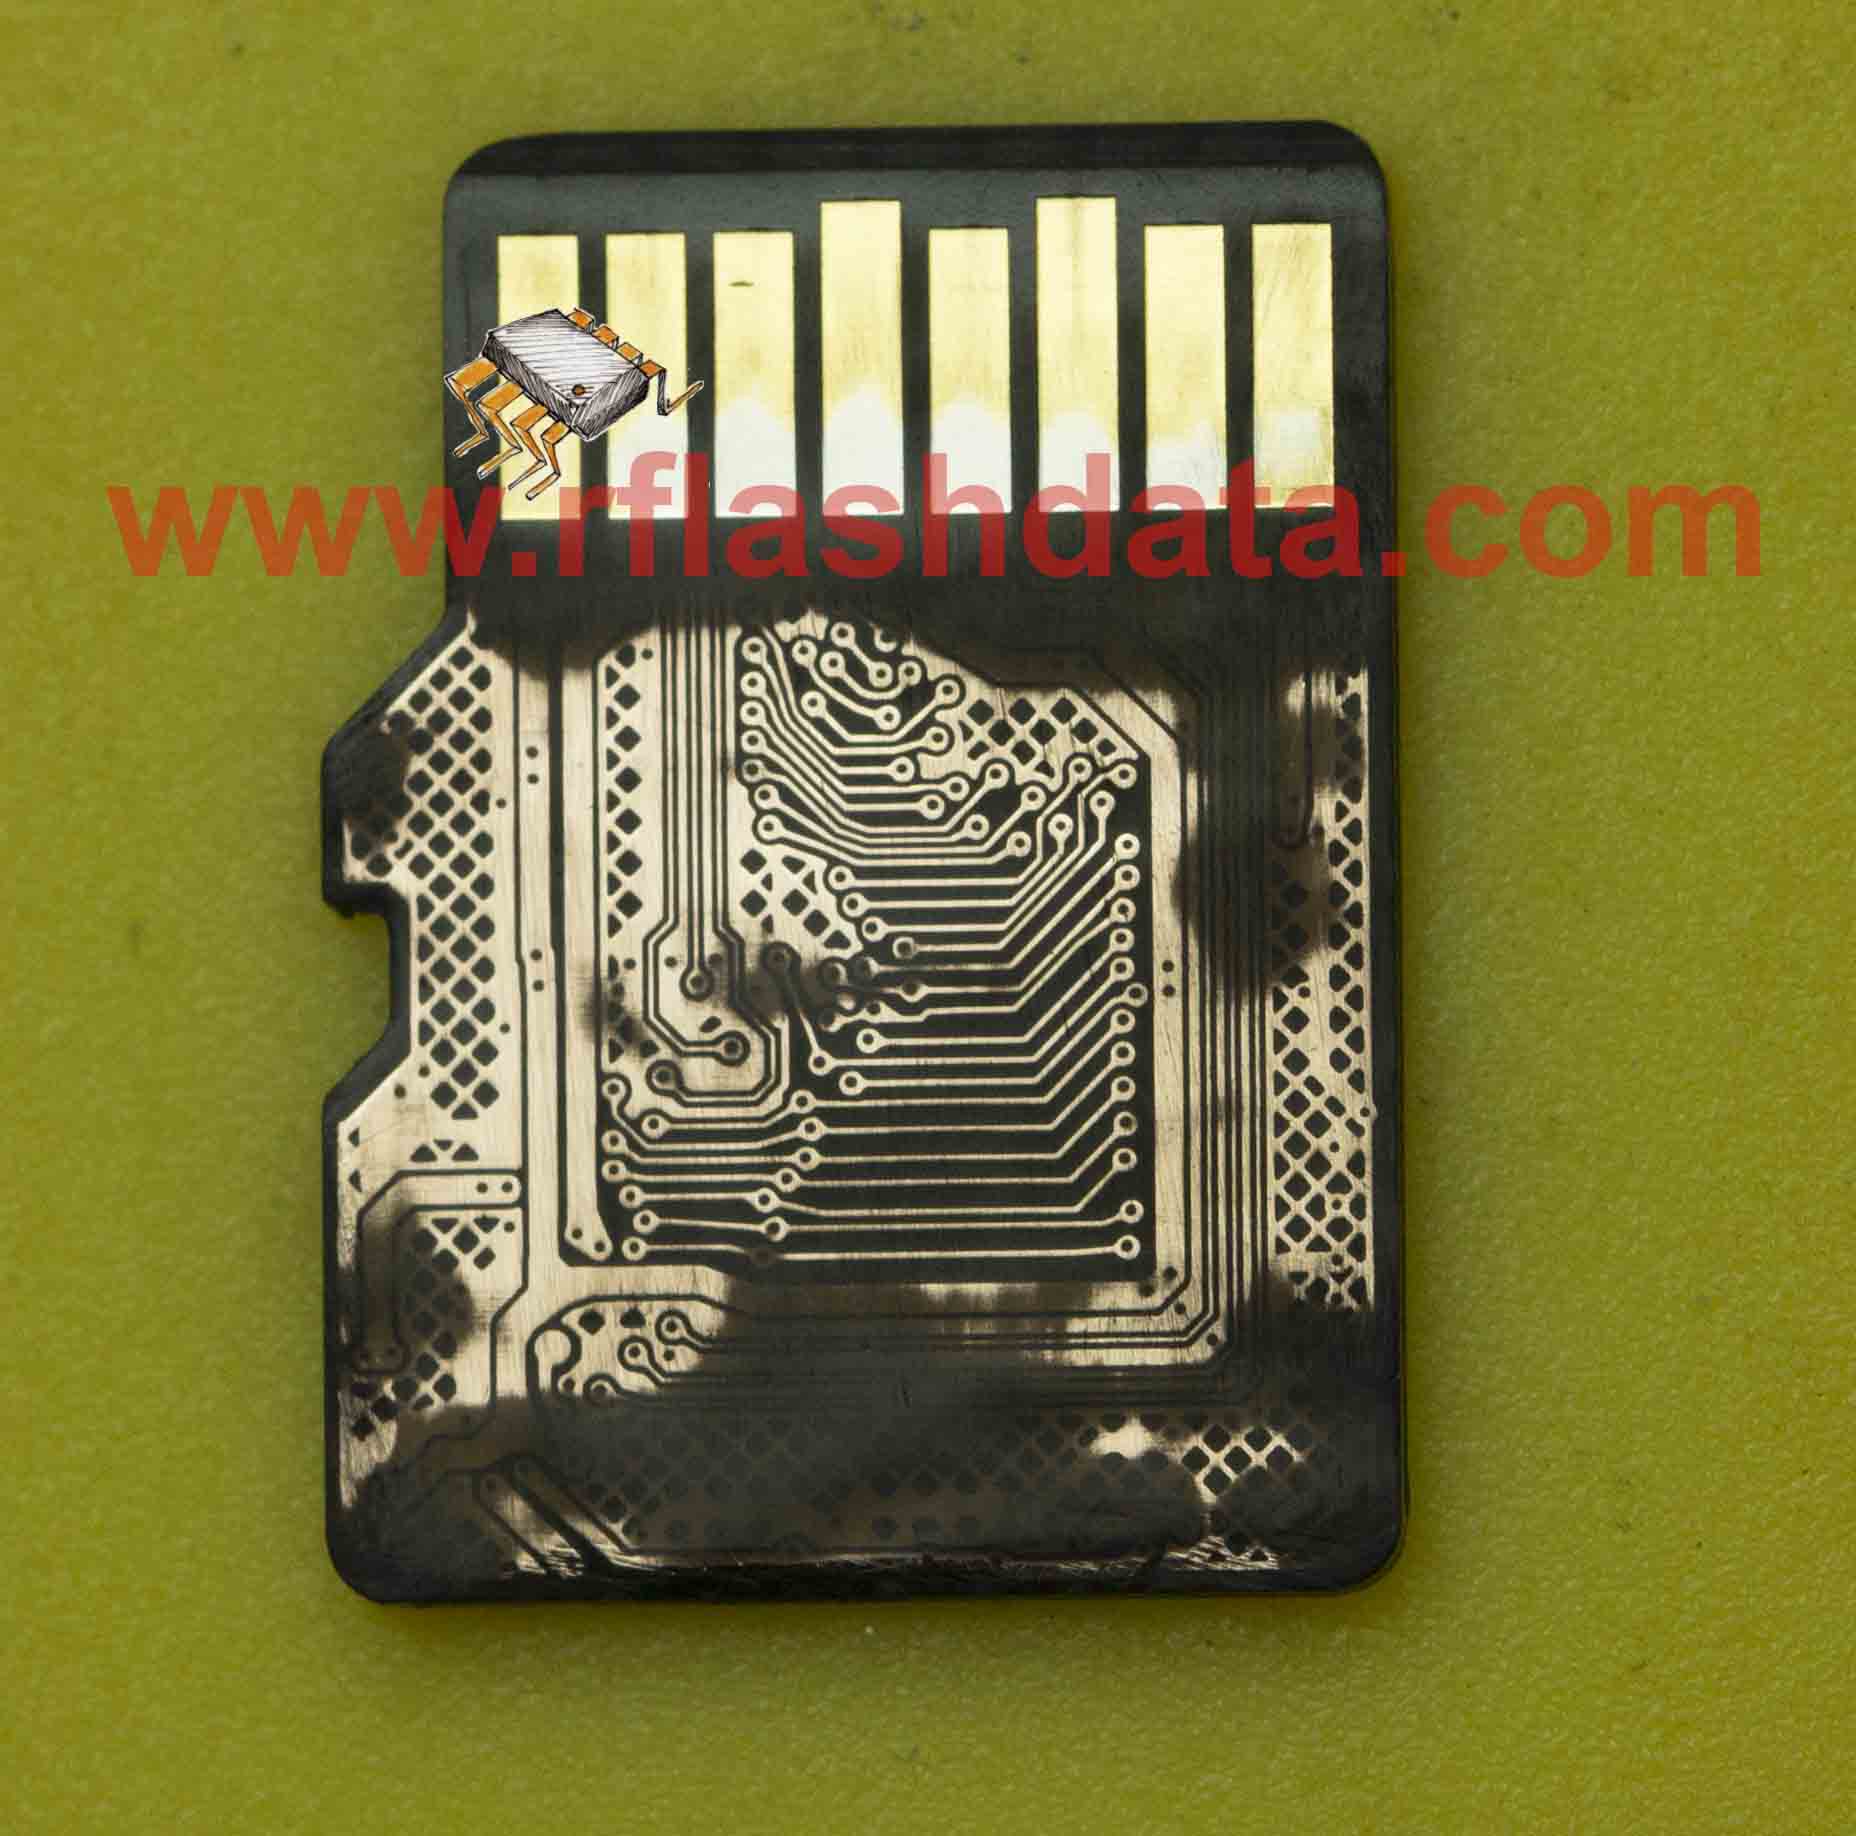 microSD pinout